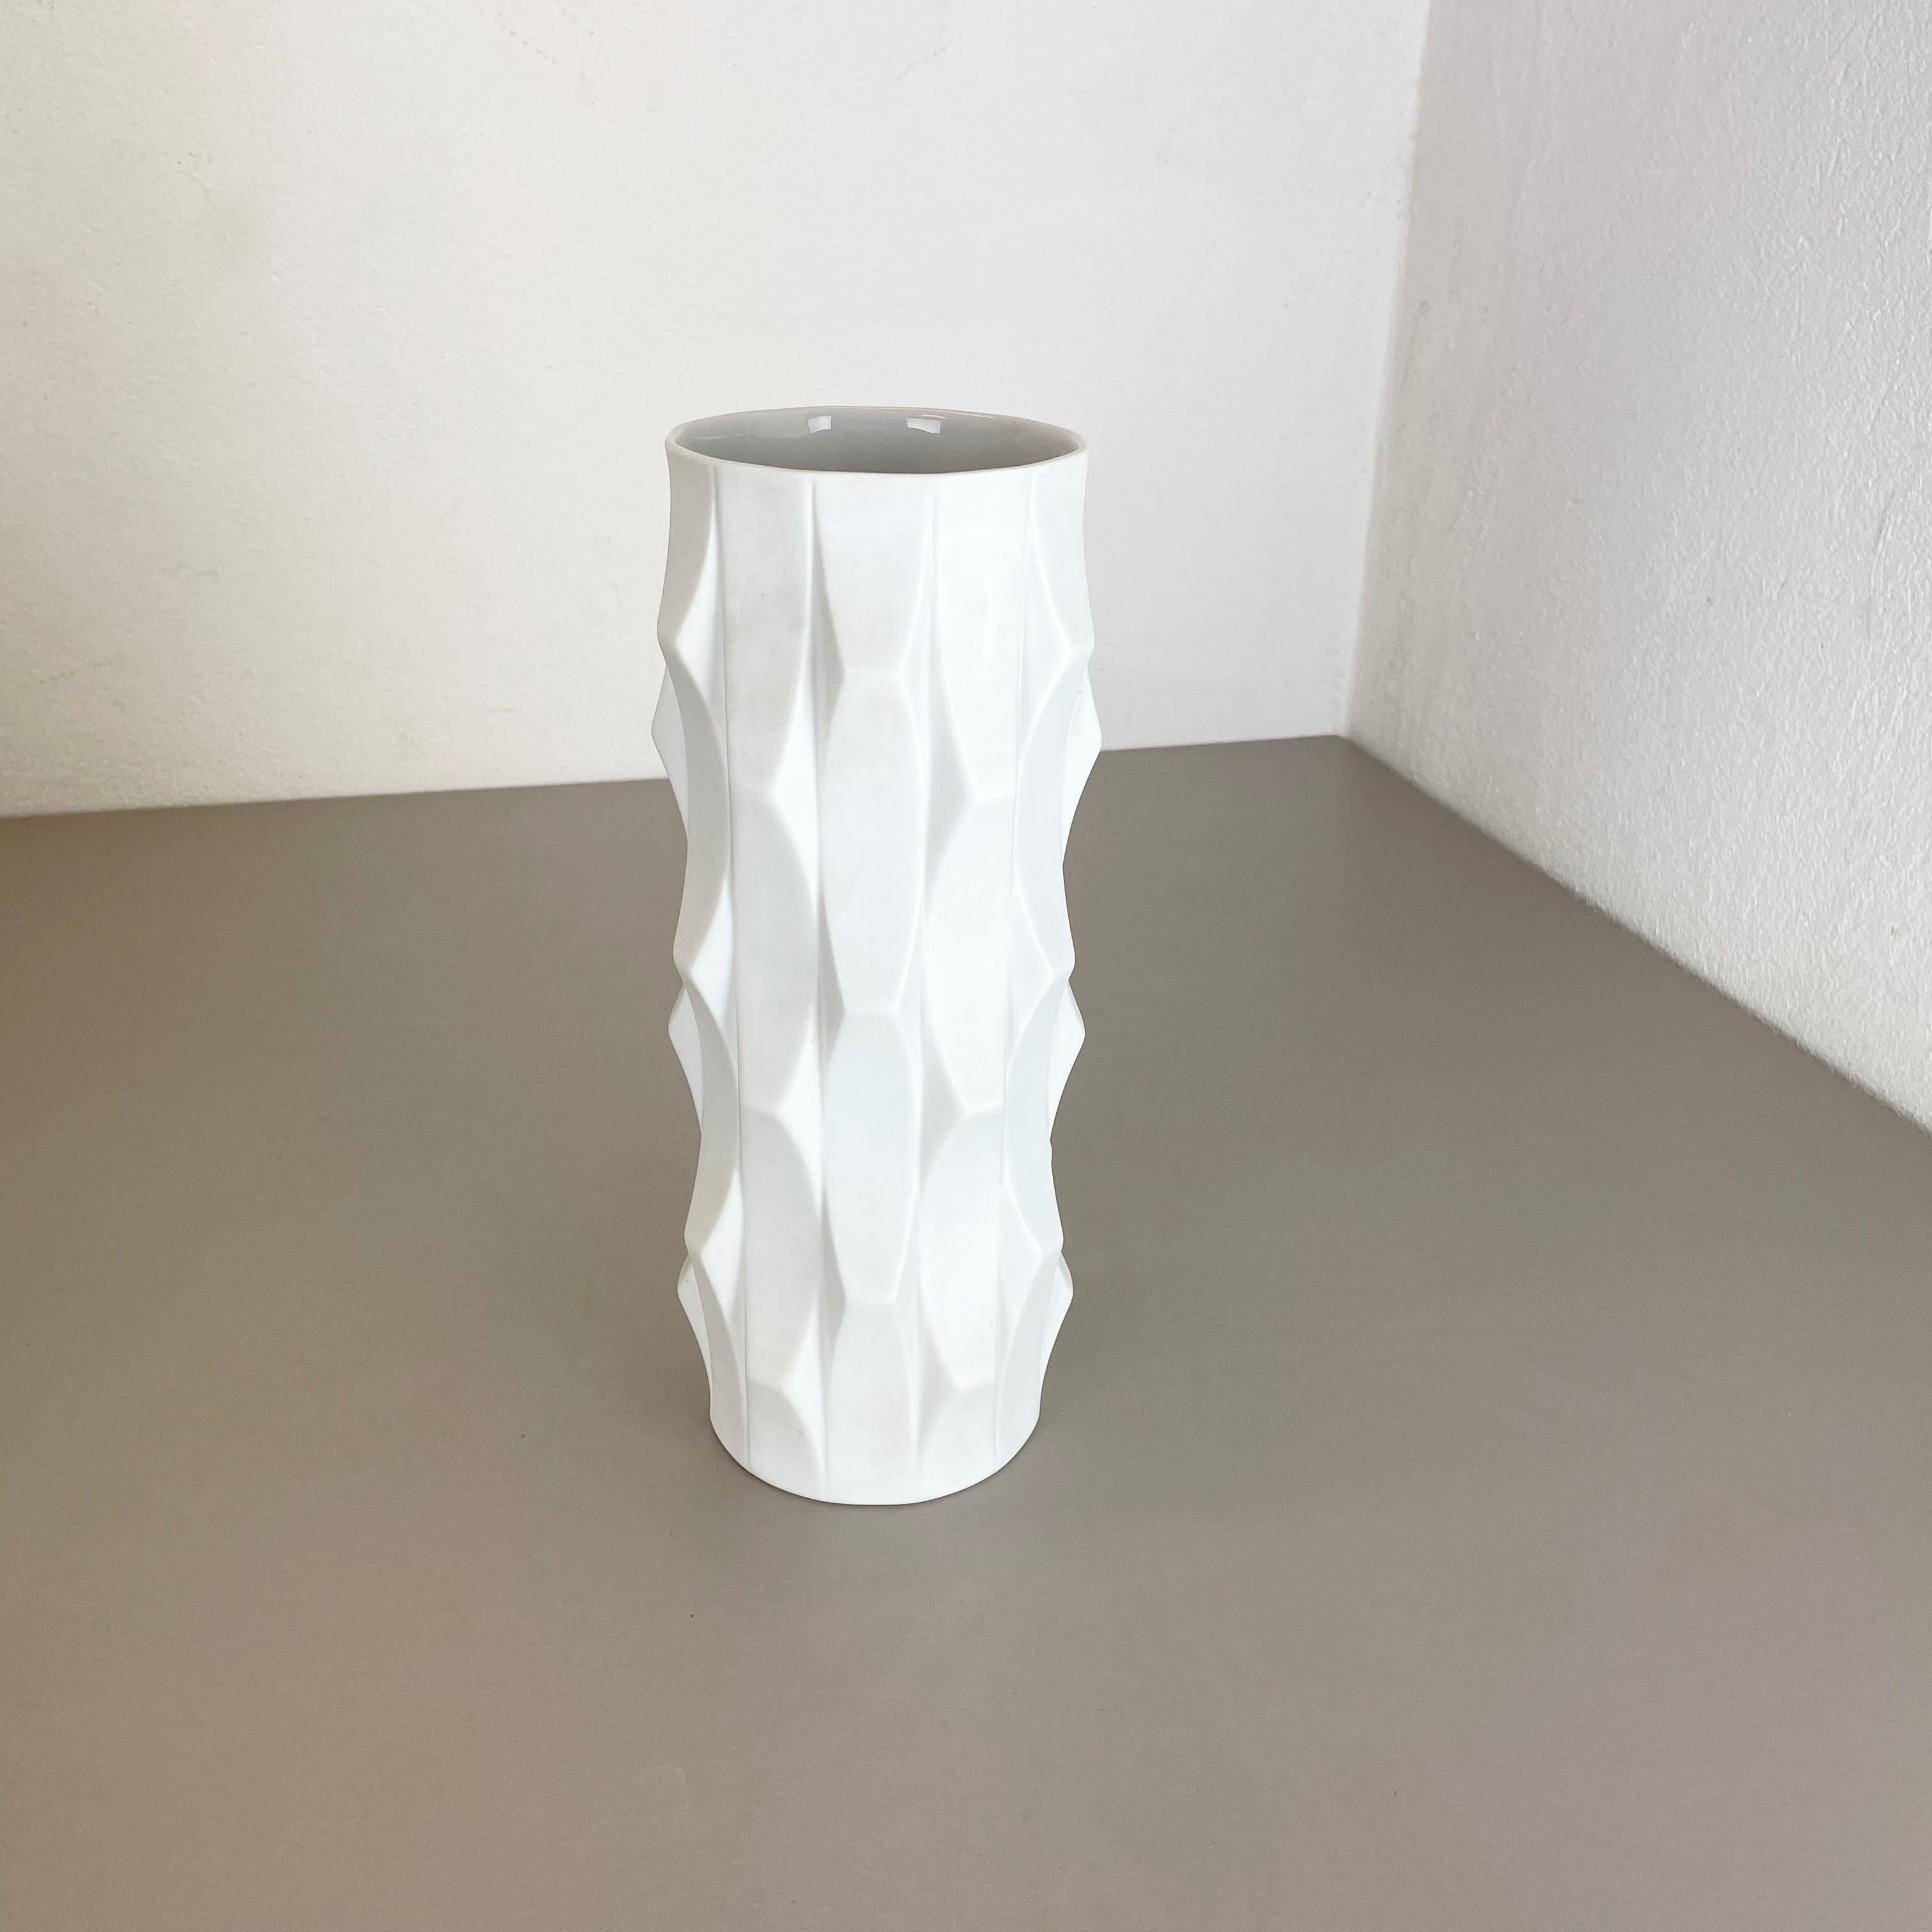 Article :

Vase en porcelaine d'art OP


Producteur :

Hutschenreuther, Allemagne


Concepteur :

Heinrich Fuchs



Décennie :

1970s



Description :

Ce vase OP Art vintage original a été produit et conçu par Heinrich Fuchs